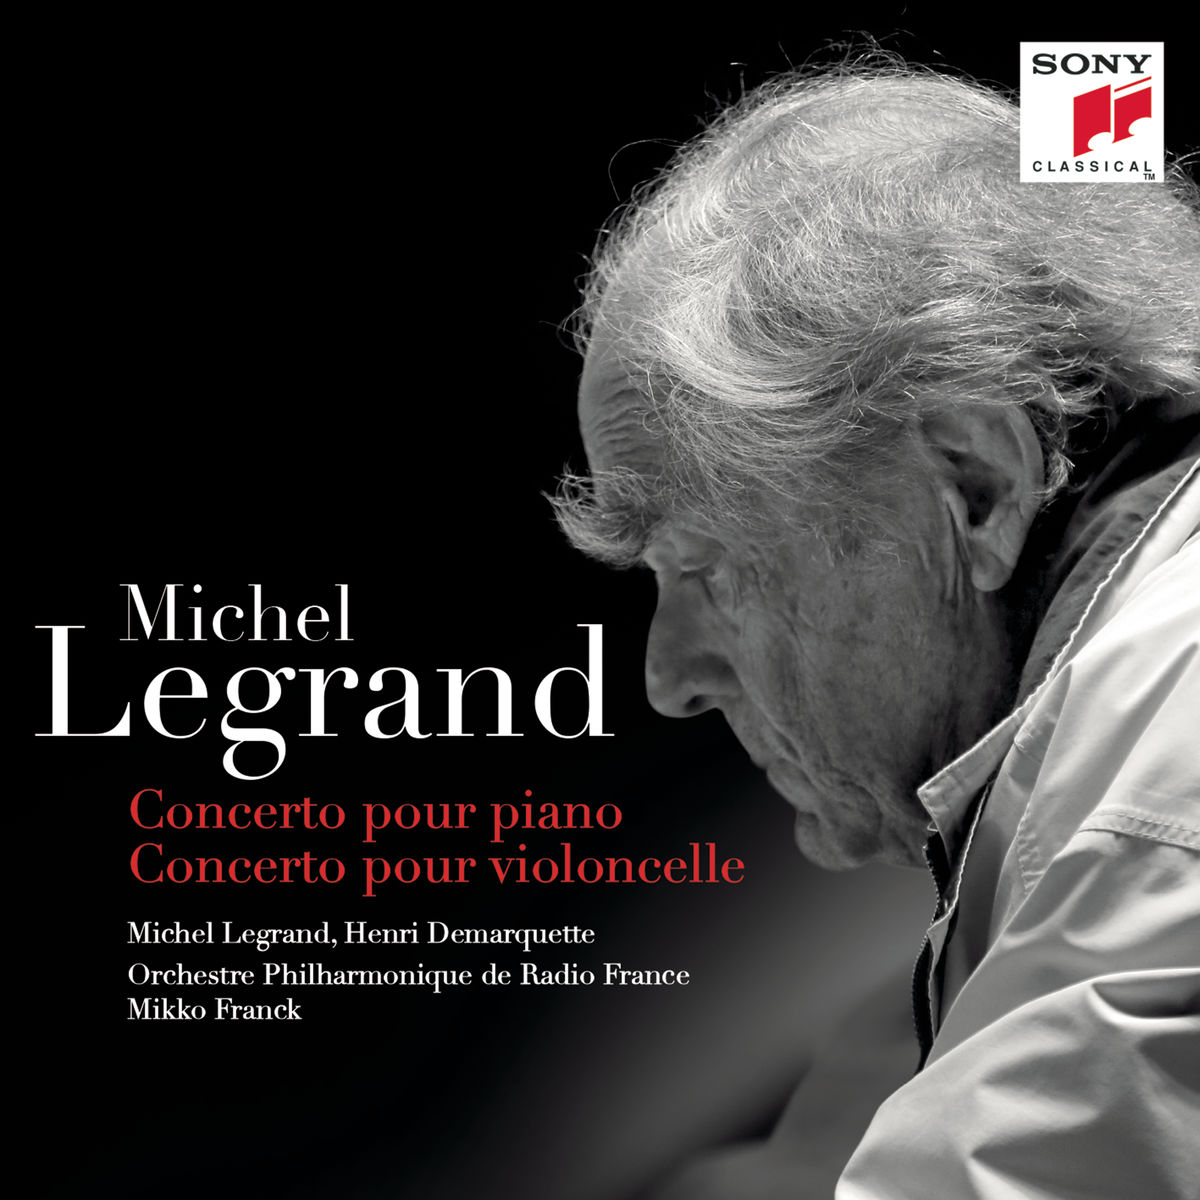 Michel Legrand - Concerto pour piano, Concerto pour violoncelle (2017) [Qobuz FLAC 24bit/48kHz]